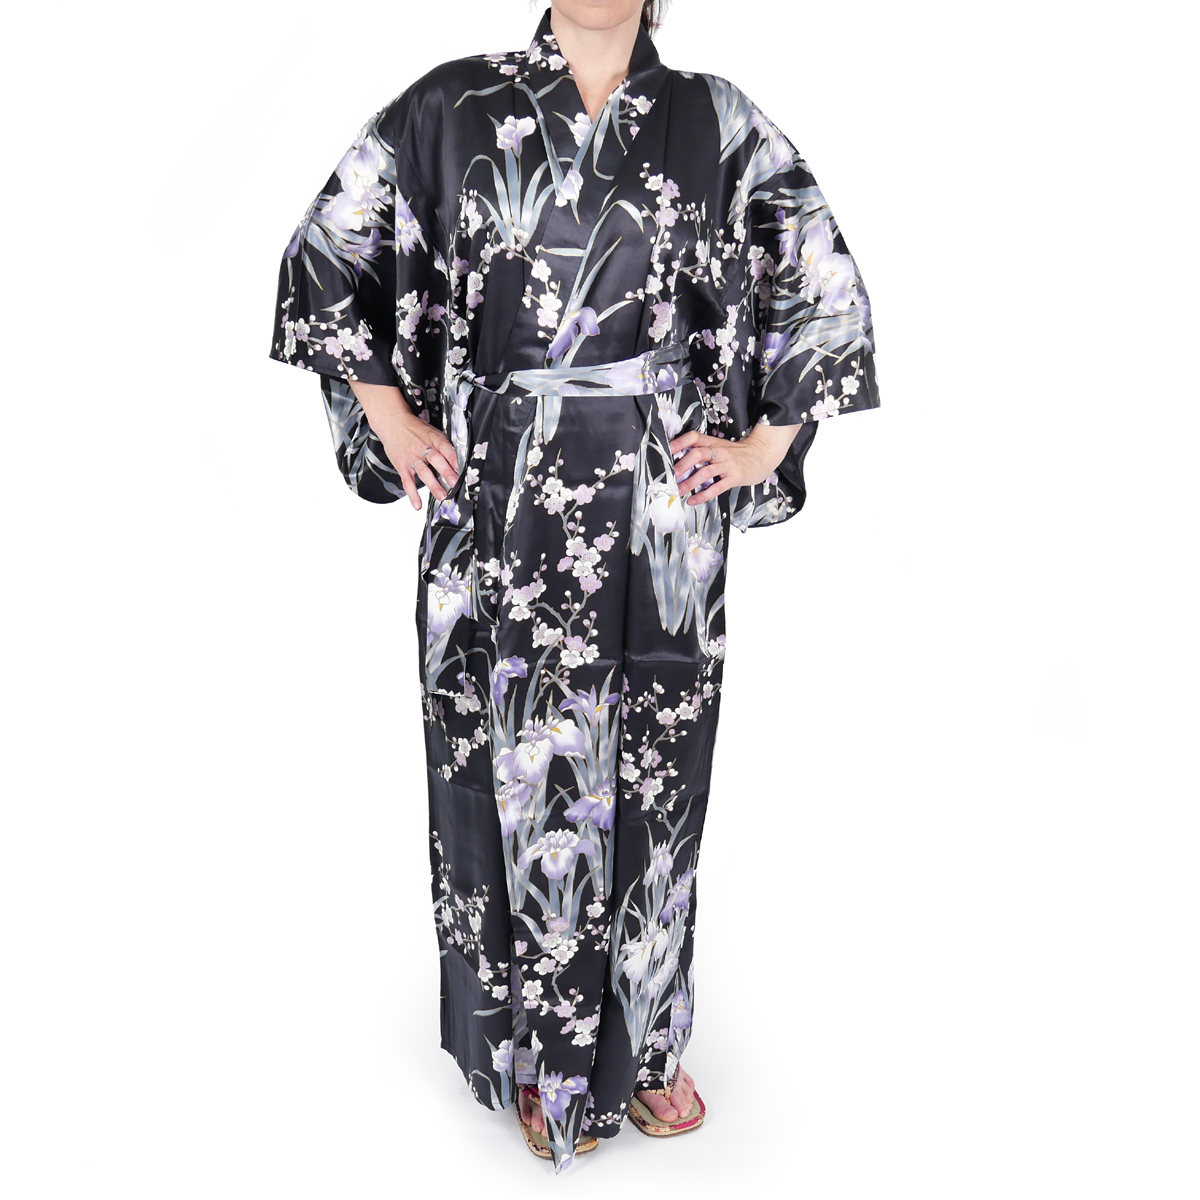 kimono yukata japonais noir en soie fleurs iris prune pour femme